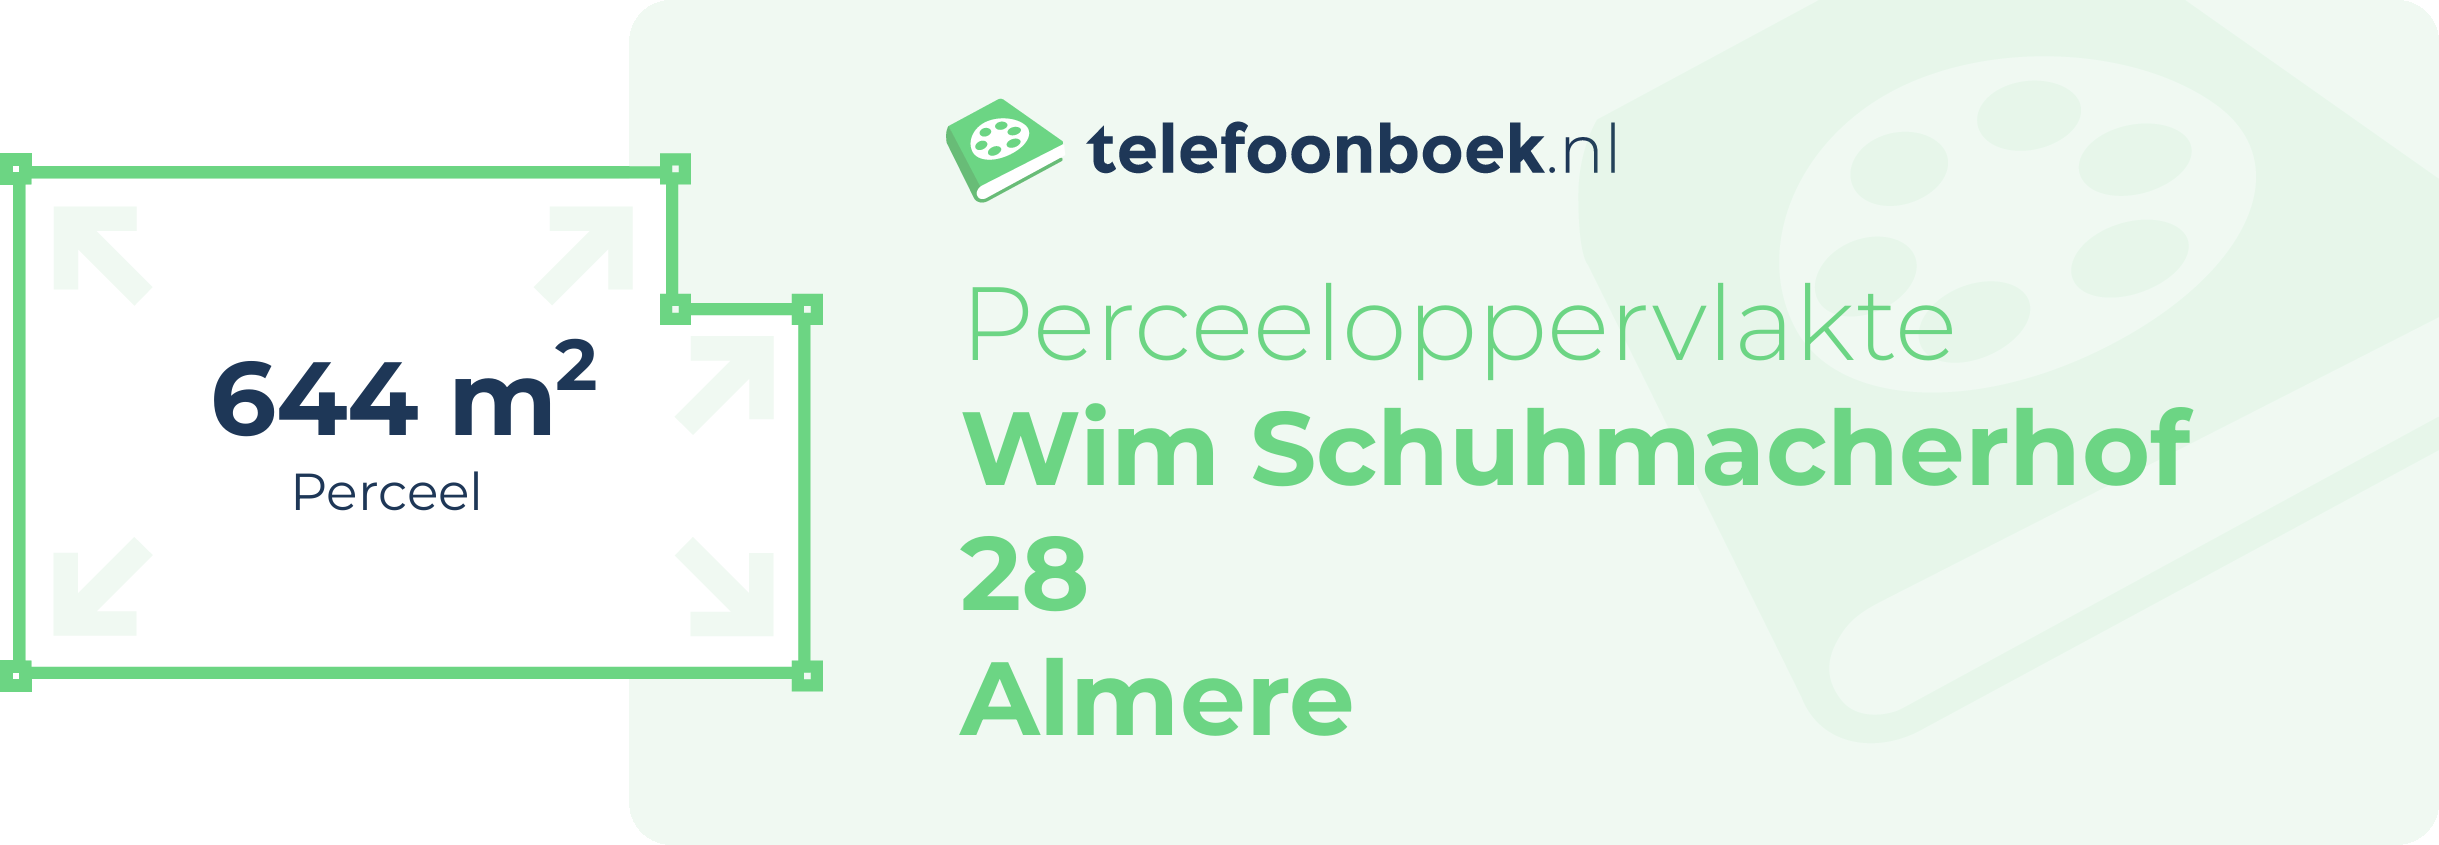 Perceeloppervlakte Wim Schuhmacherhof 28 Almere